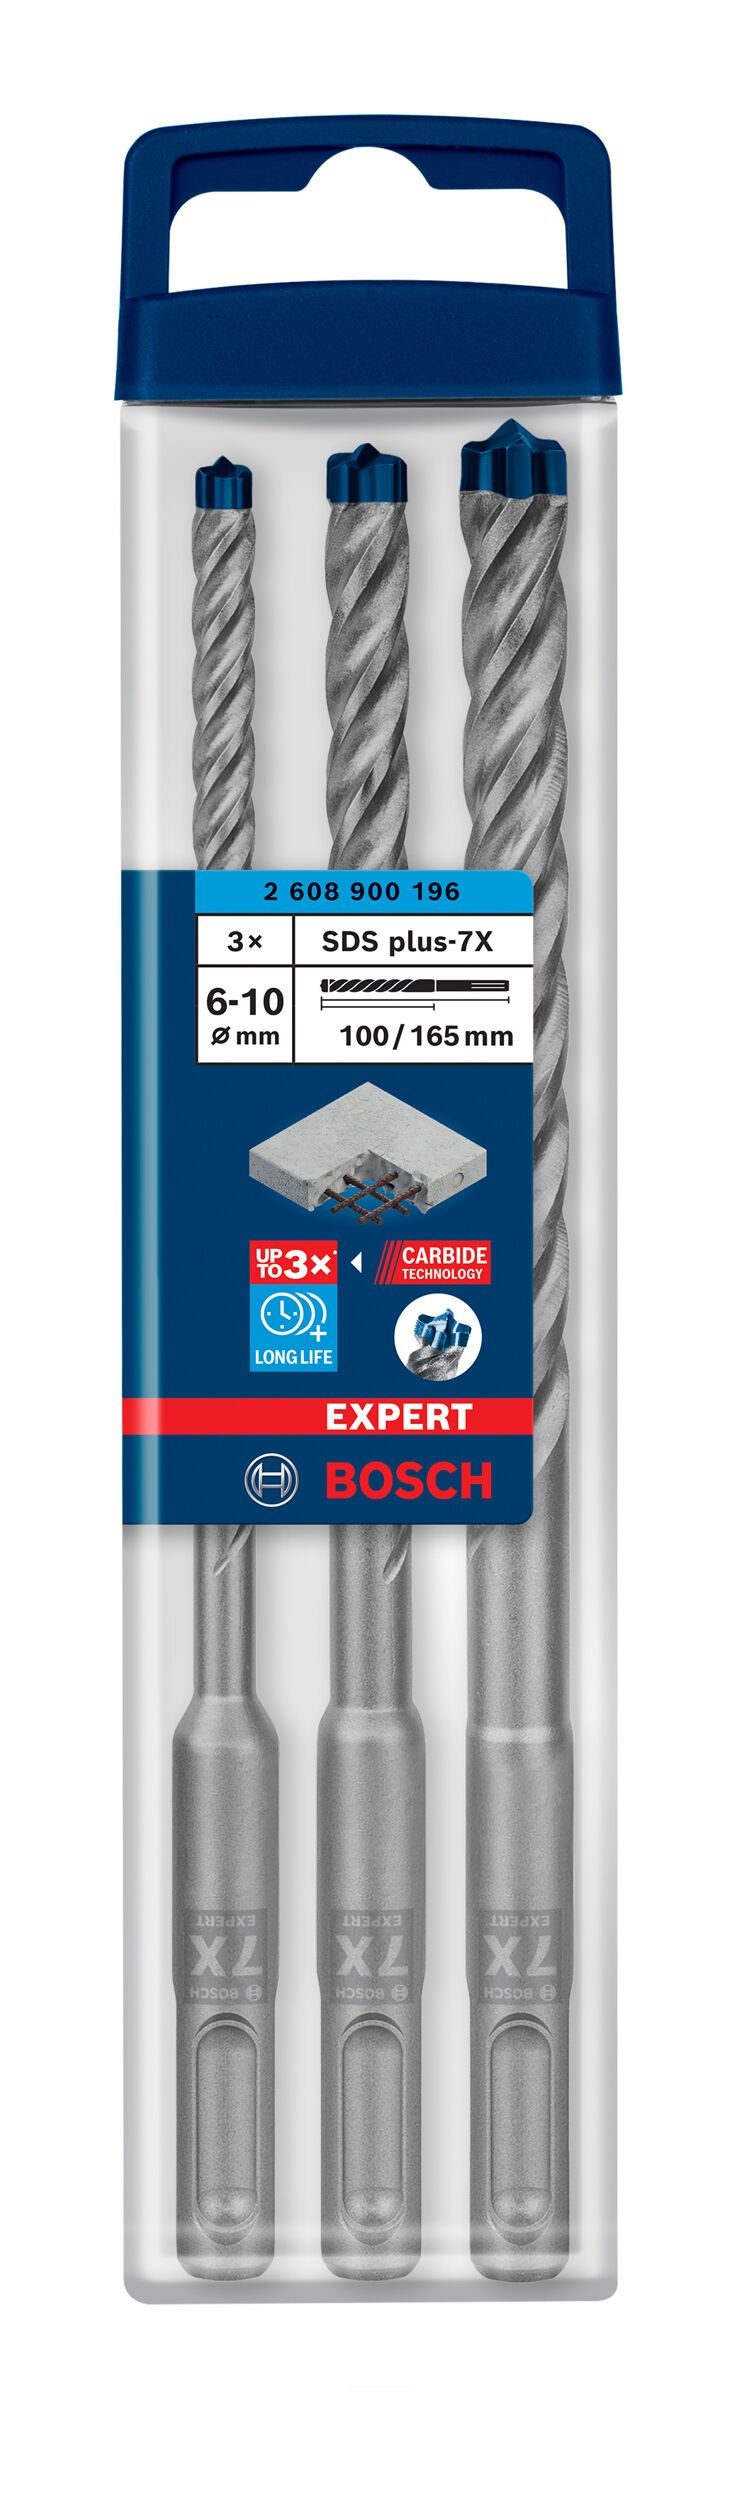 BOSCH Universalbohrer Expert SDS 8, plus-7X, mm 10 - - 6, Hammerbohrer-Set 3-teilig